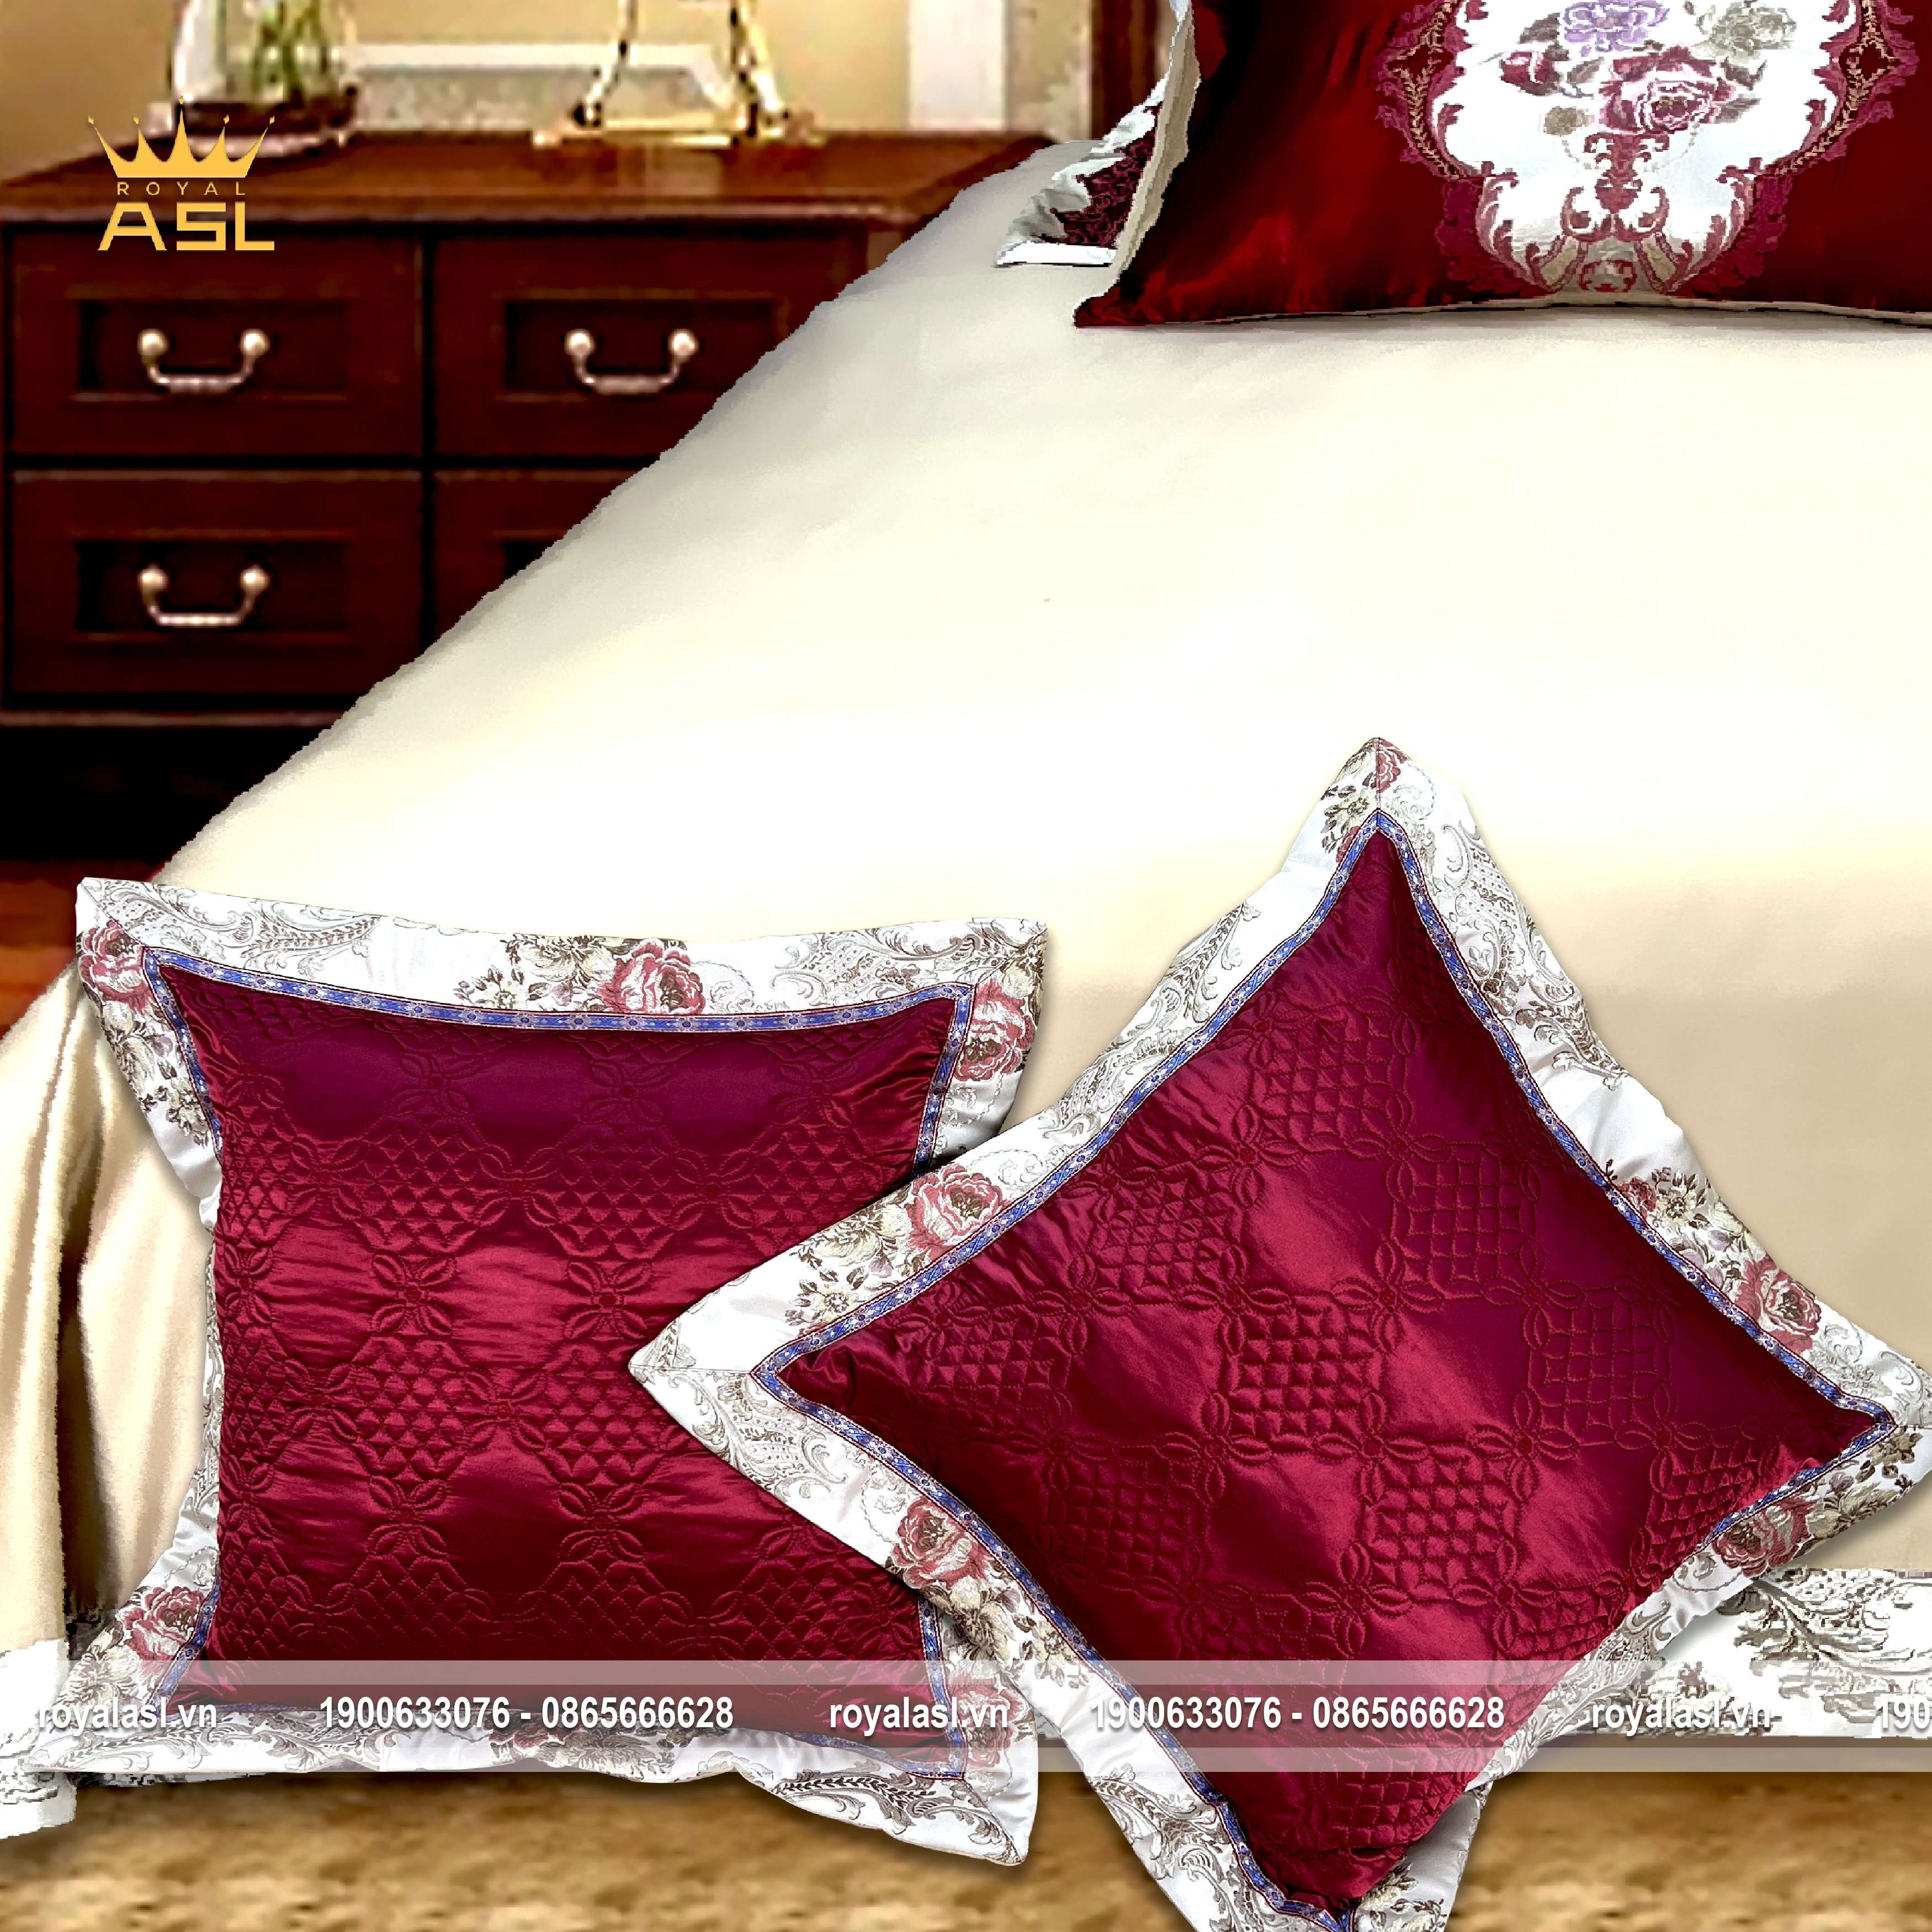 Bộ Chăn Ra Gối Luxury RoseSatin Gấm Lụa - Họa Tiết Hoa Văn Thêu Cách Điệu –Màu Hồng Xám-Bộ 8 Món-DR0112